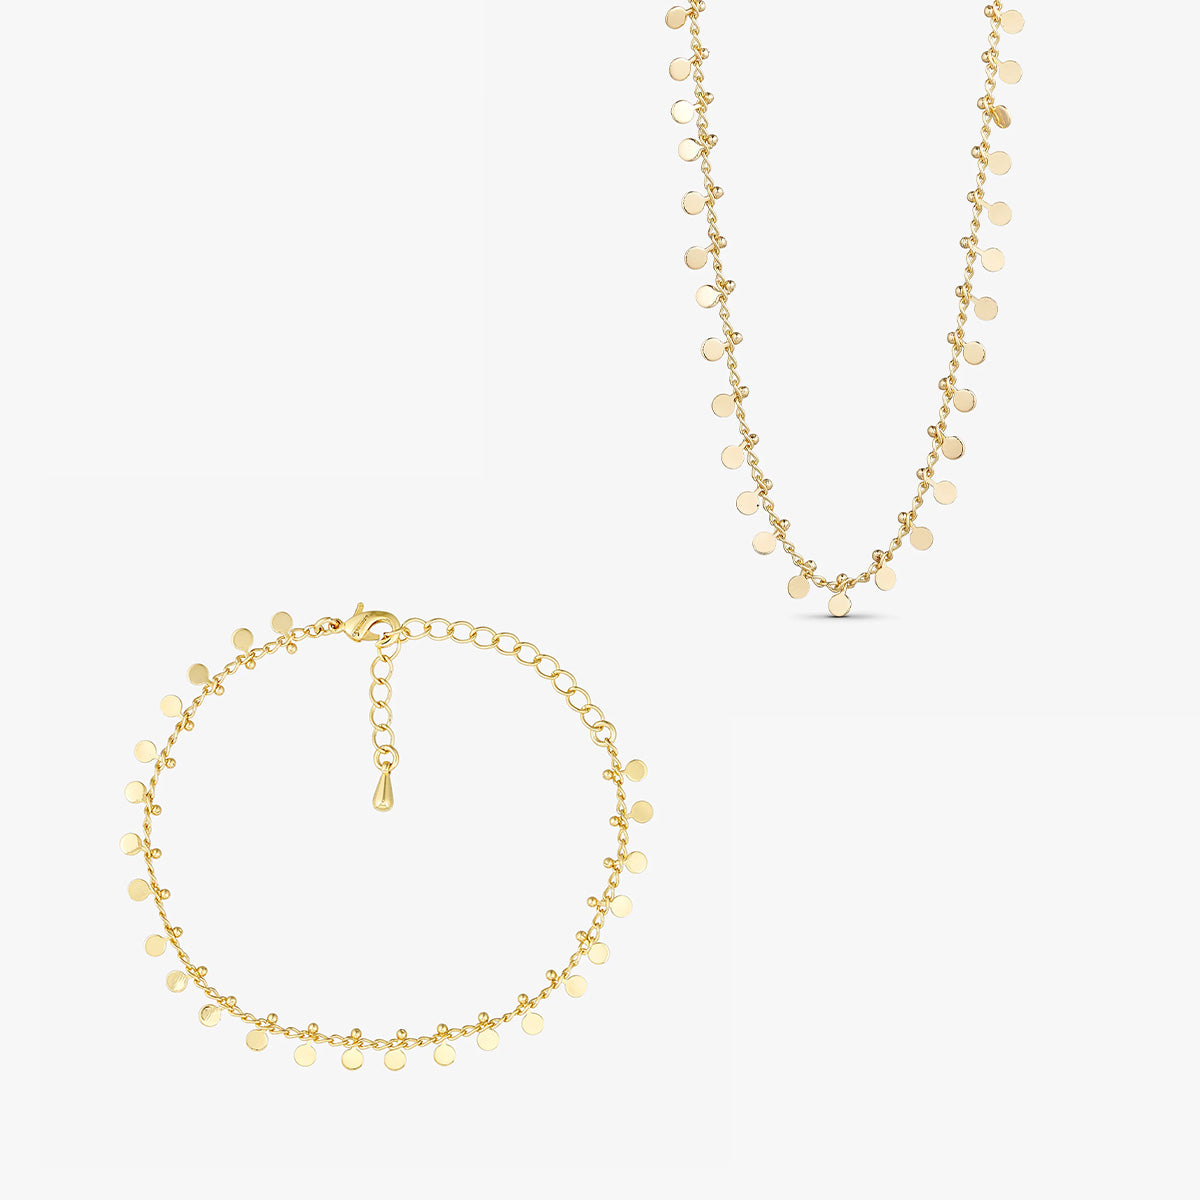 Jewelery set - Ave Necklace / Ave Bracelet - 18 carat gold plated